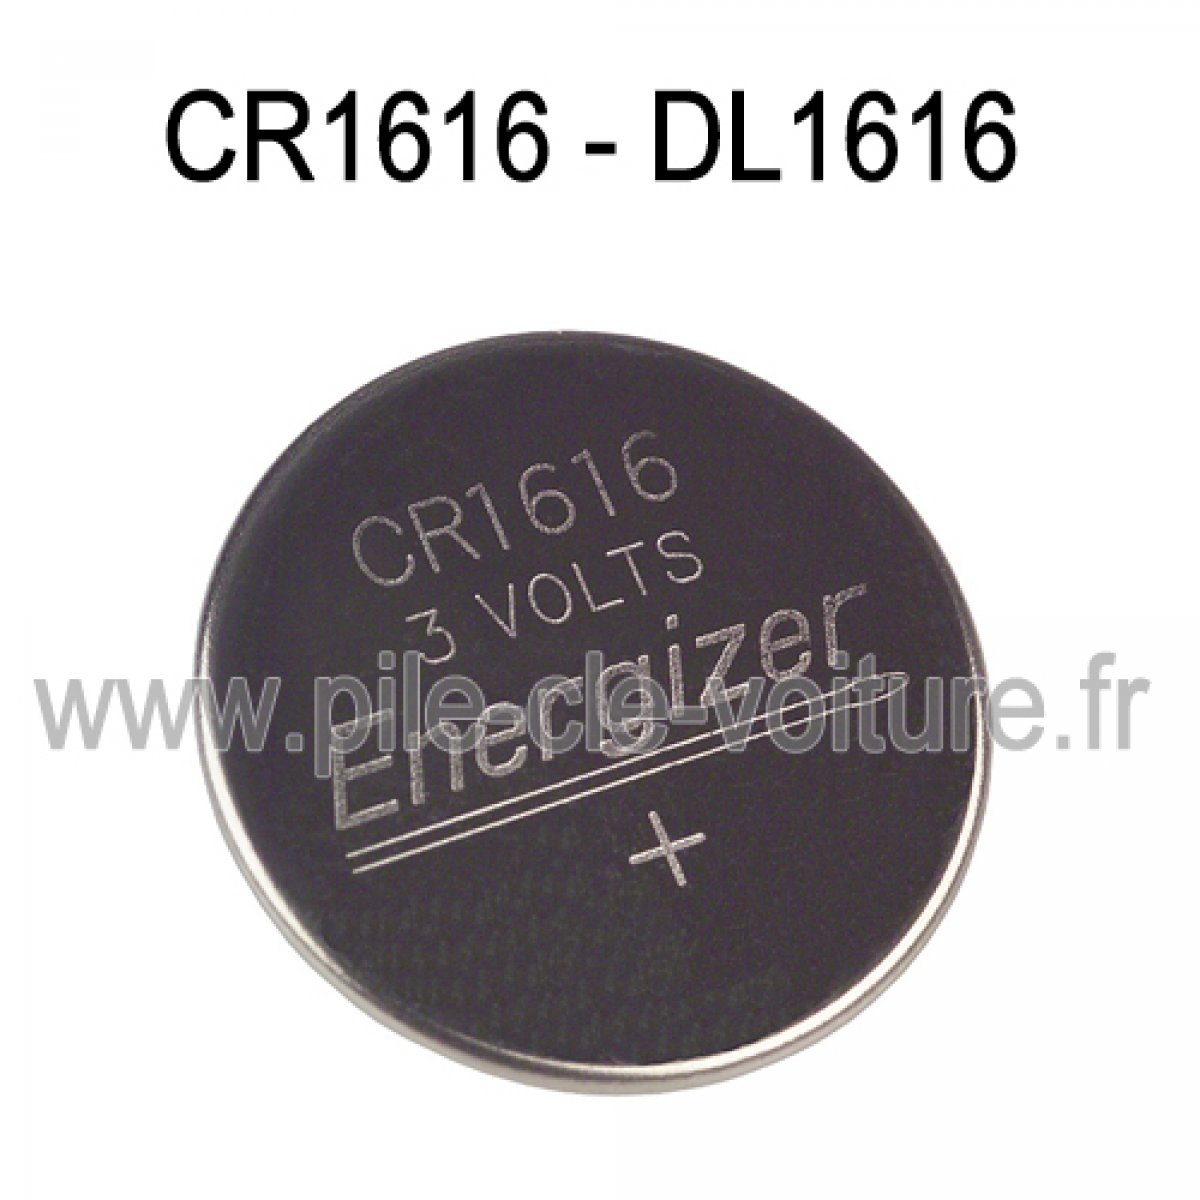 Piles Lithium : CR1616 DL1616 3V 3 volt